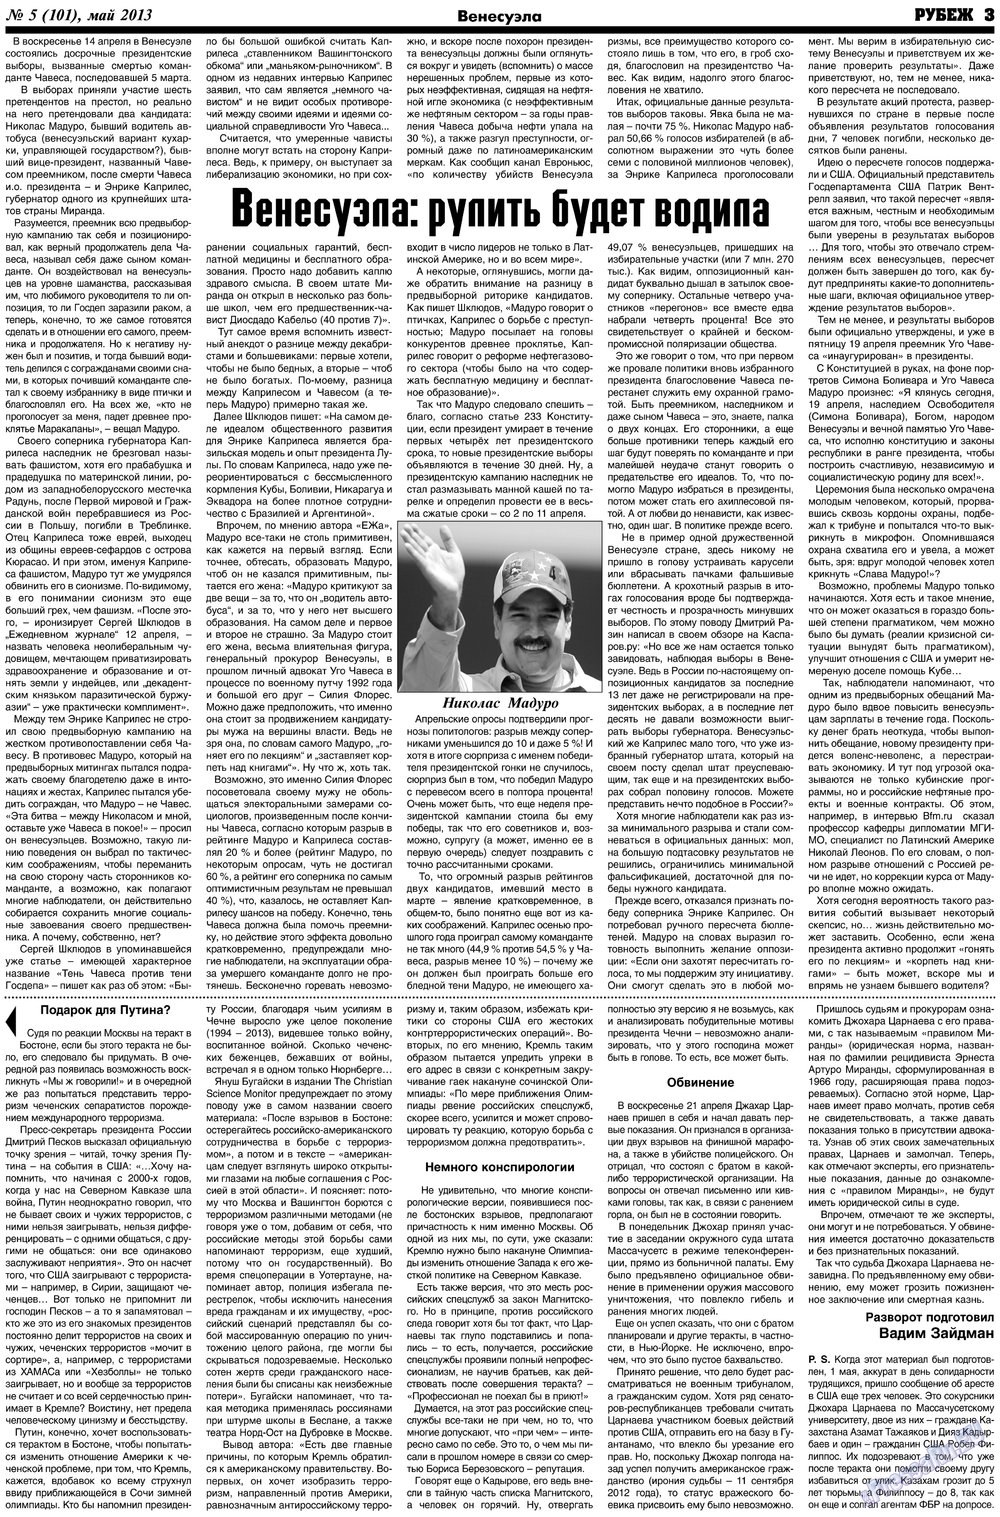 Рубеж (газета). 2013 год, номер 5, стр. 3